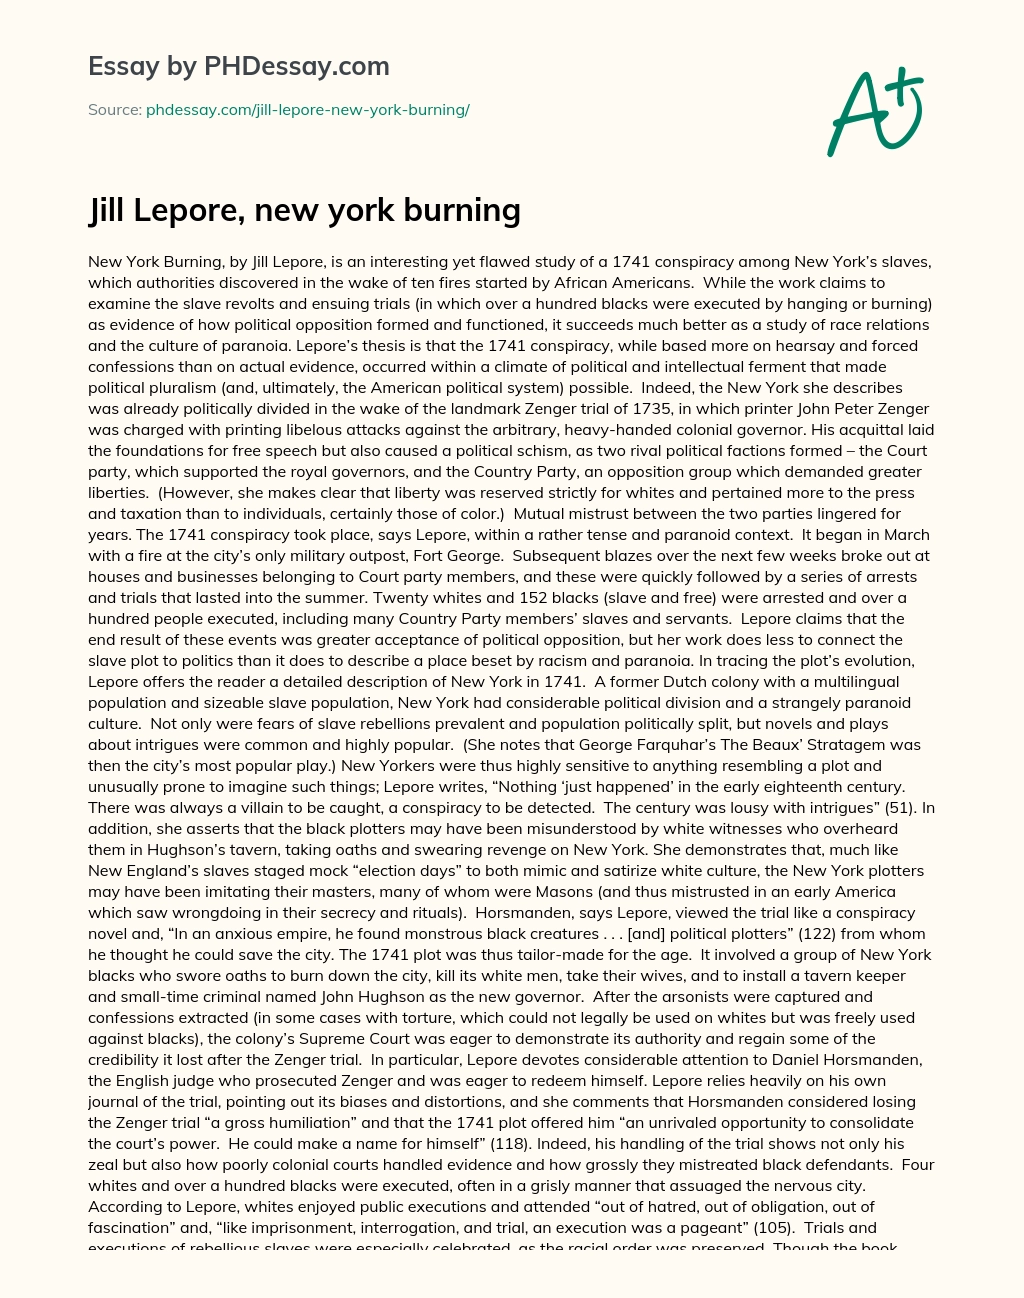 Jill Lepore, new york burning essay